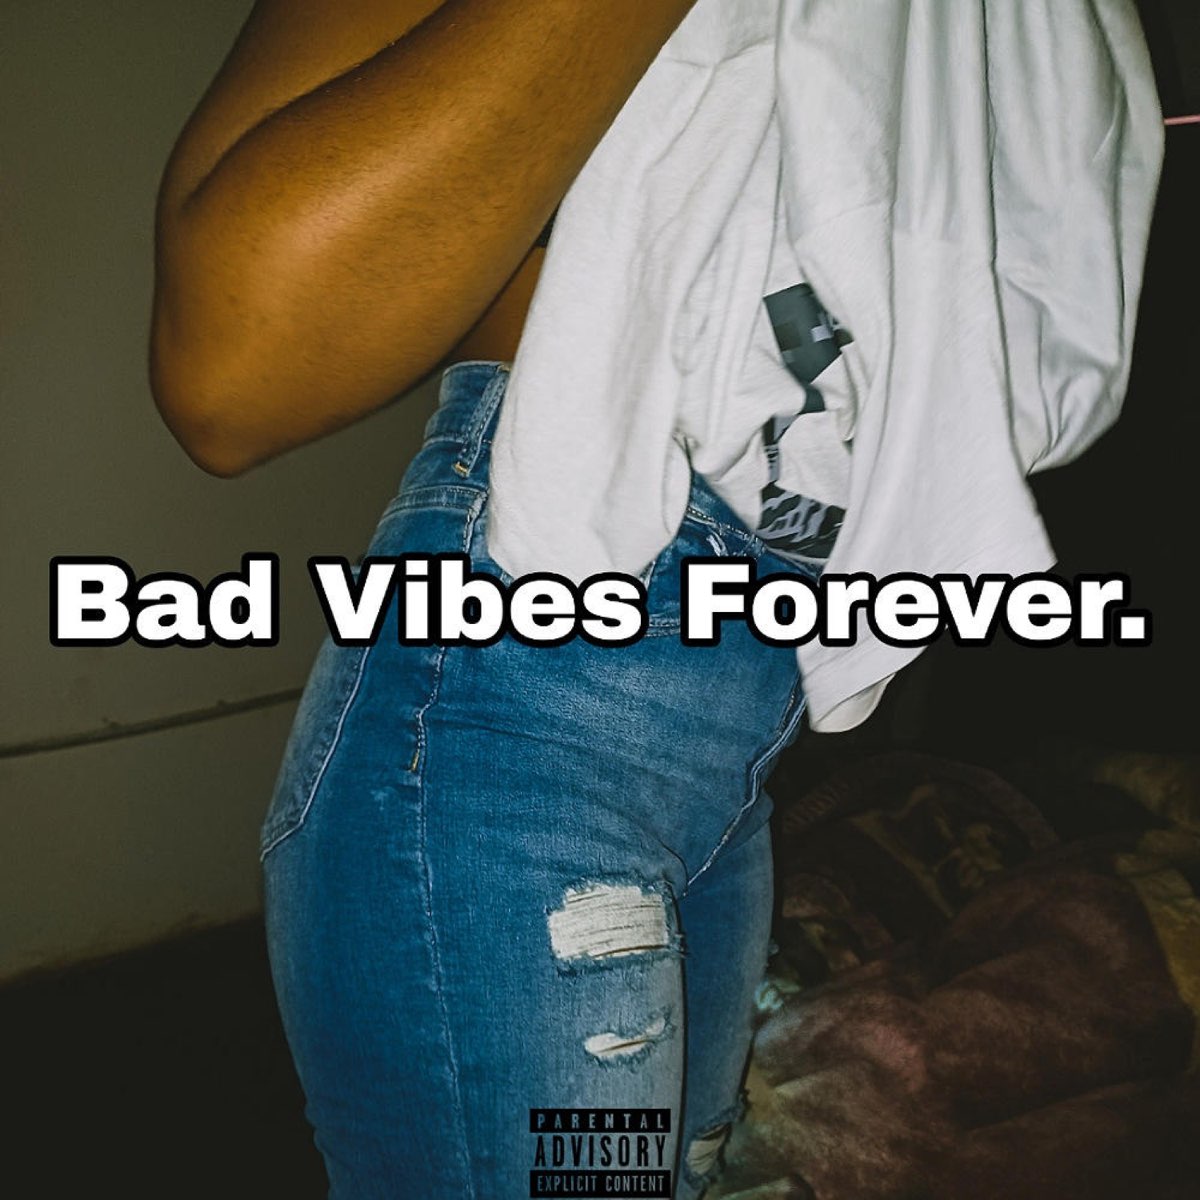 Vibes forever. Bad Vibes Forever. Bad Vibes Forever album. Bad Vibes Forever 1920x1080. Bad Vibes Forever на аву.